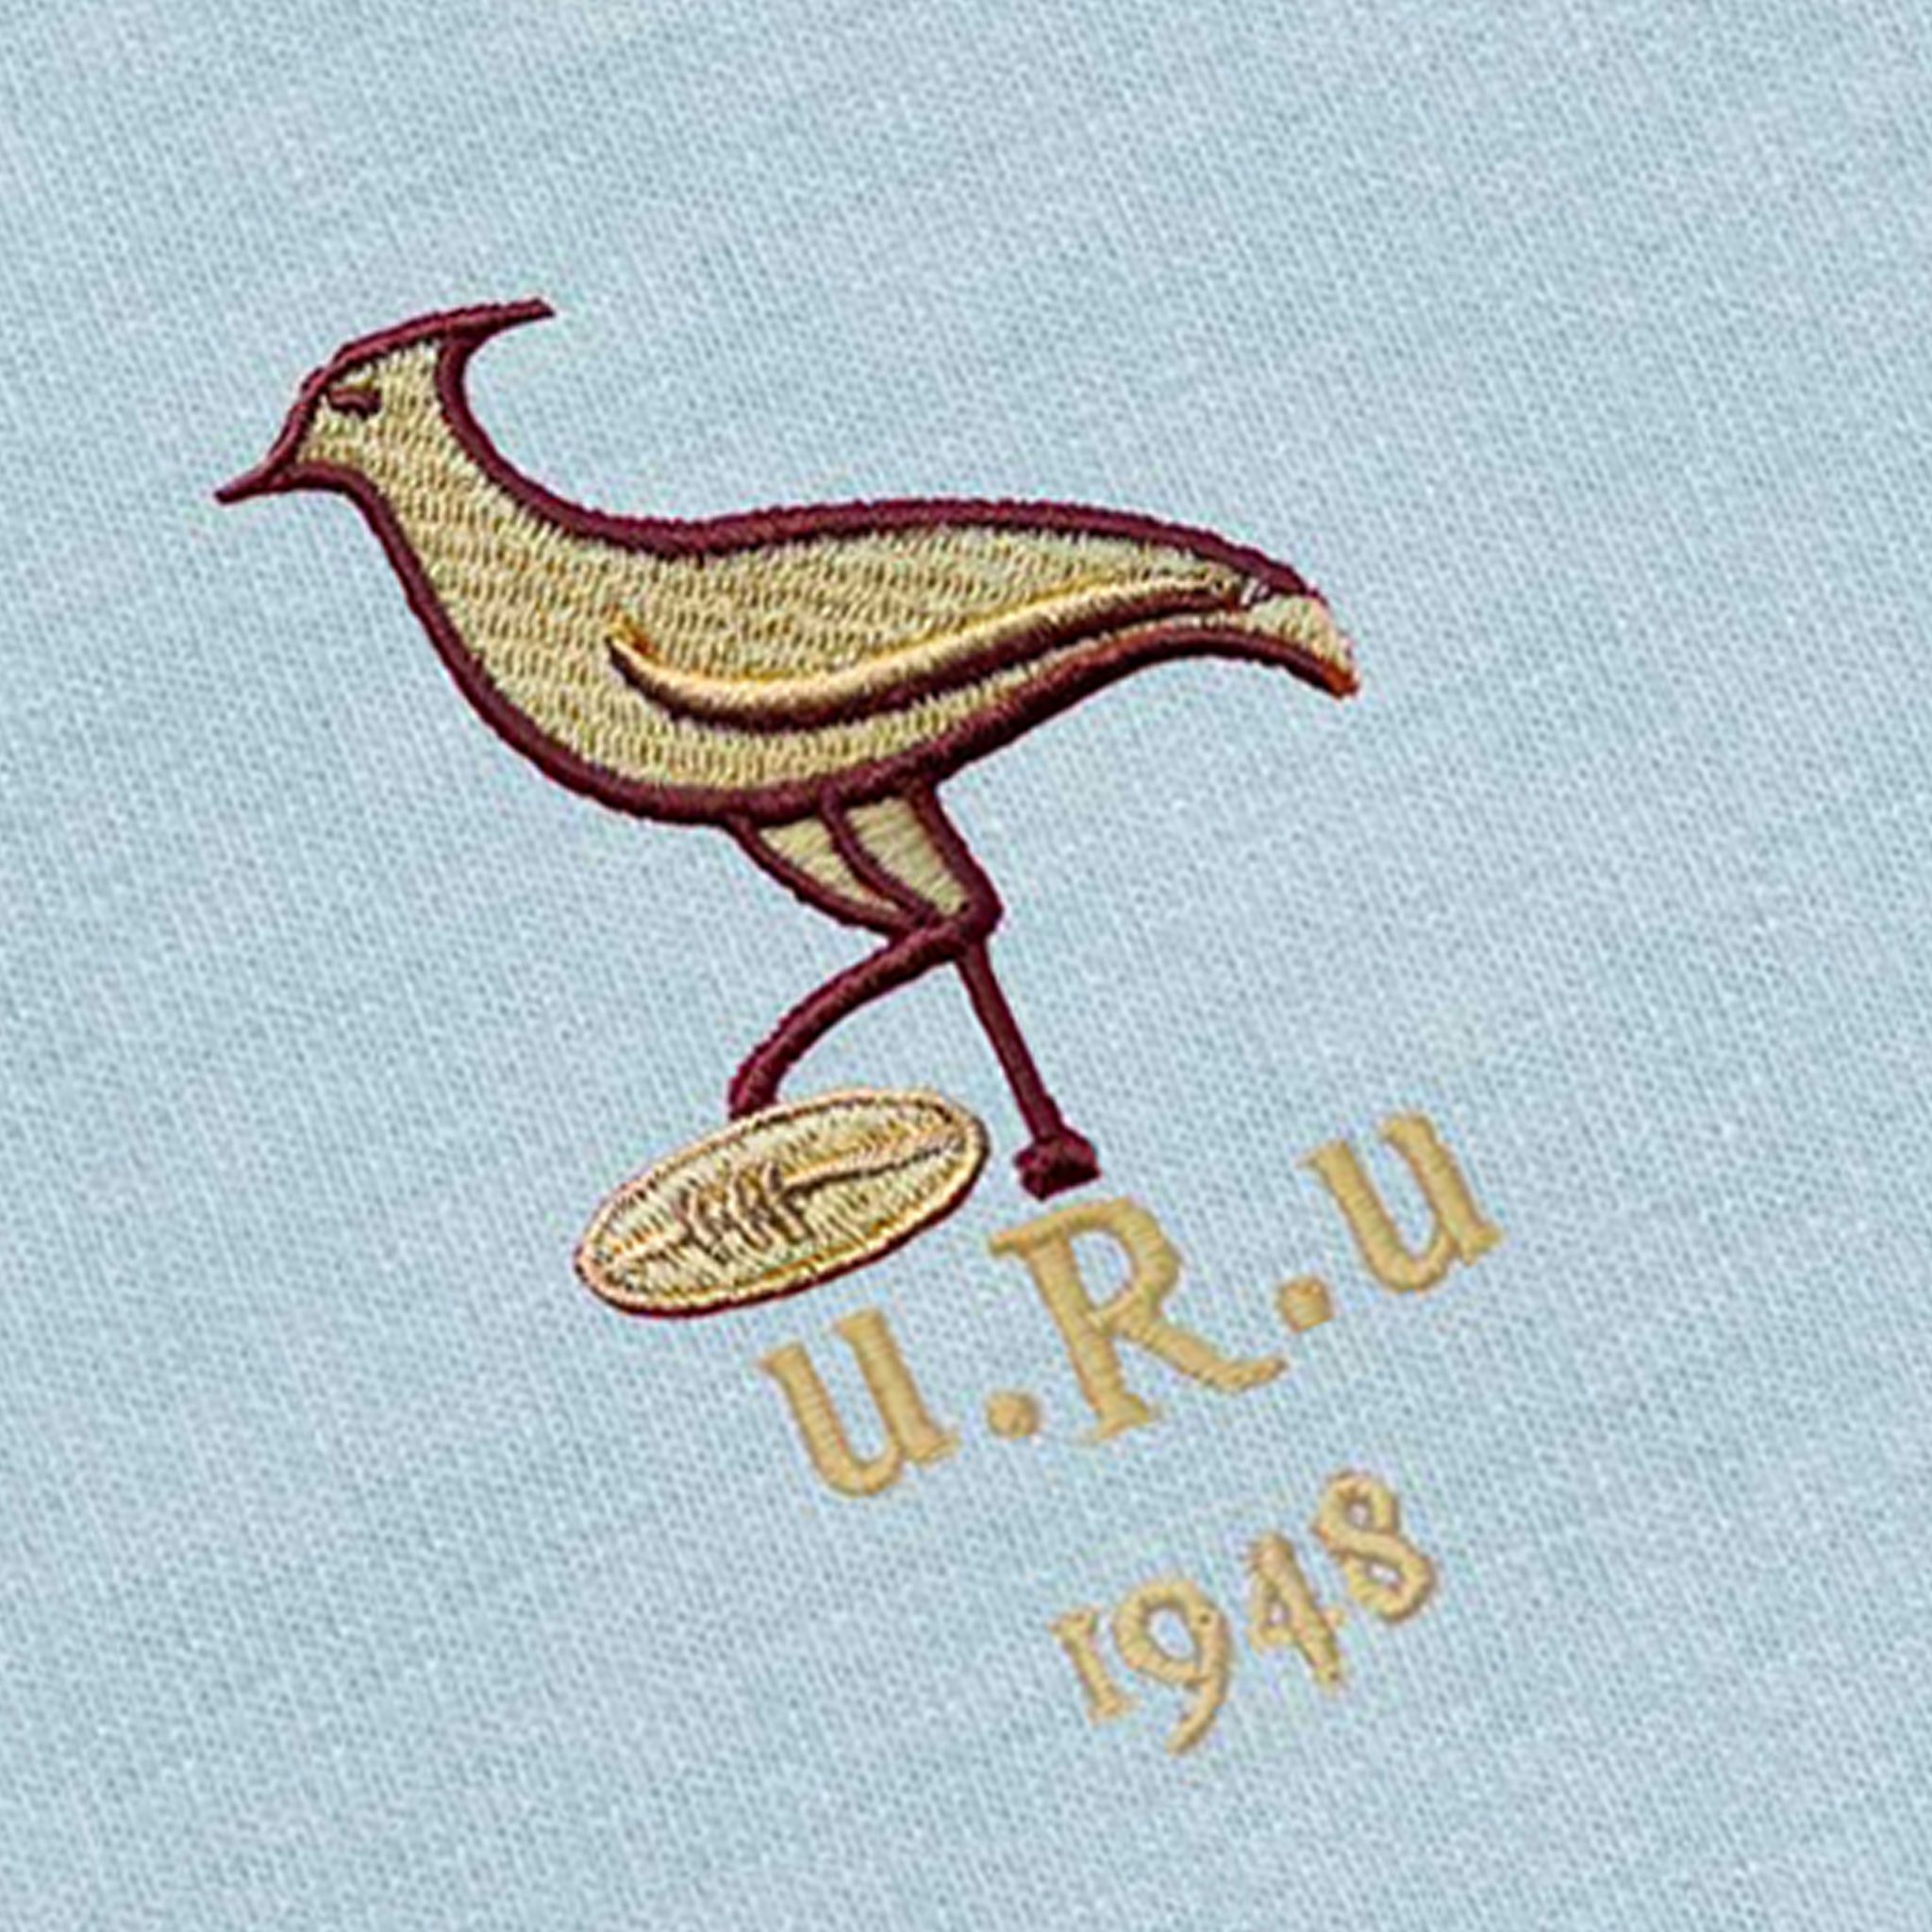 Uruguay_1948_Vintage_Rugby Shirt_Logo